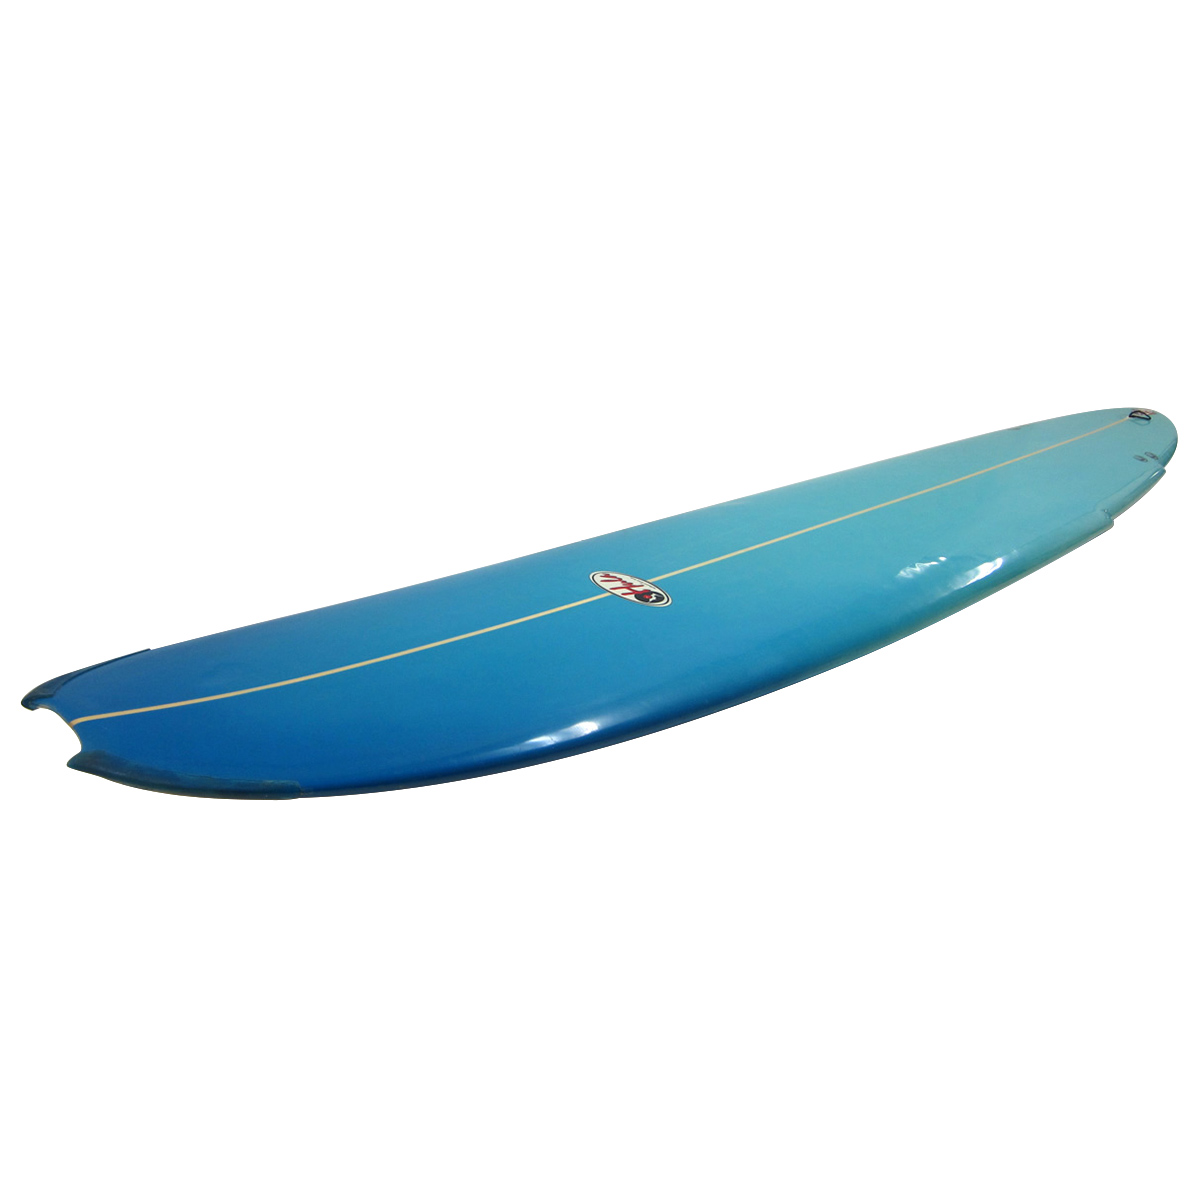 HULA SURFBOARDS / THE MANTA 9`0